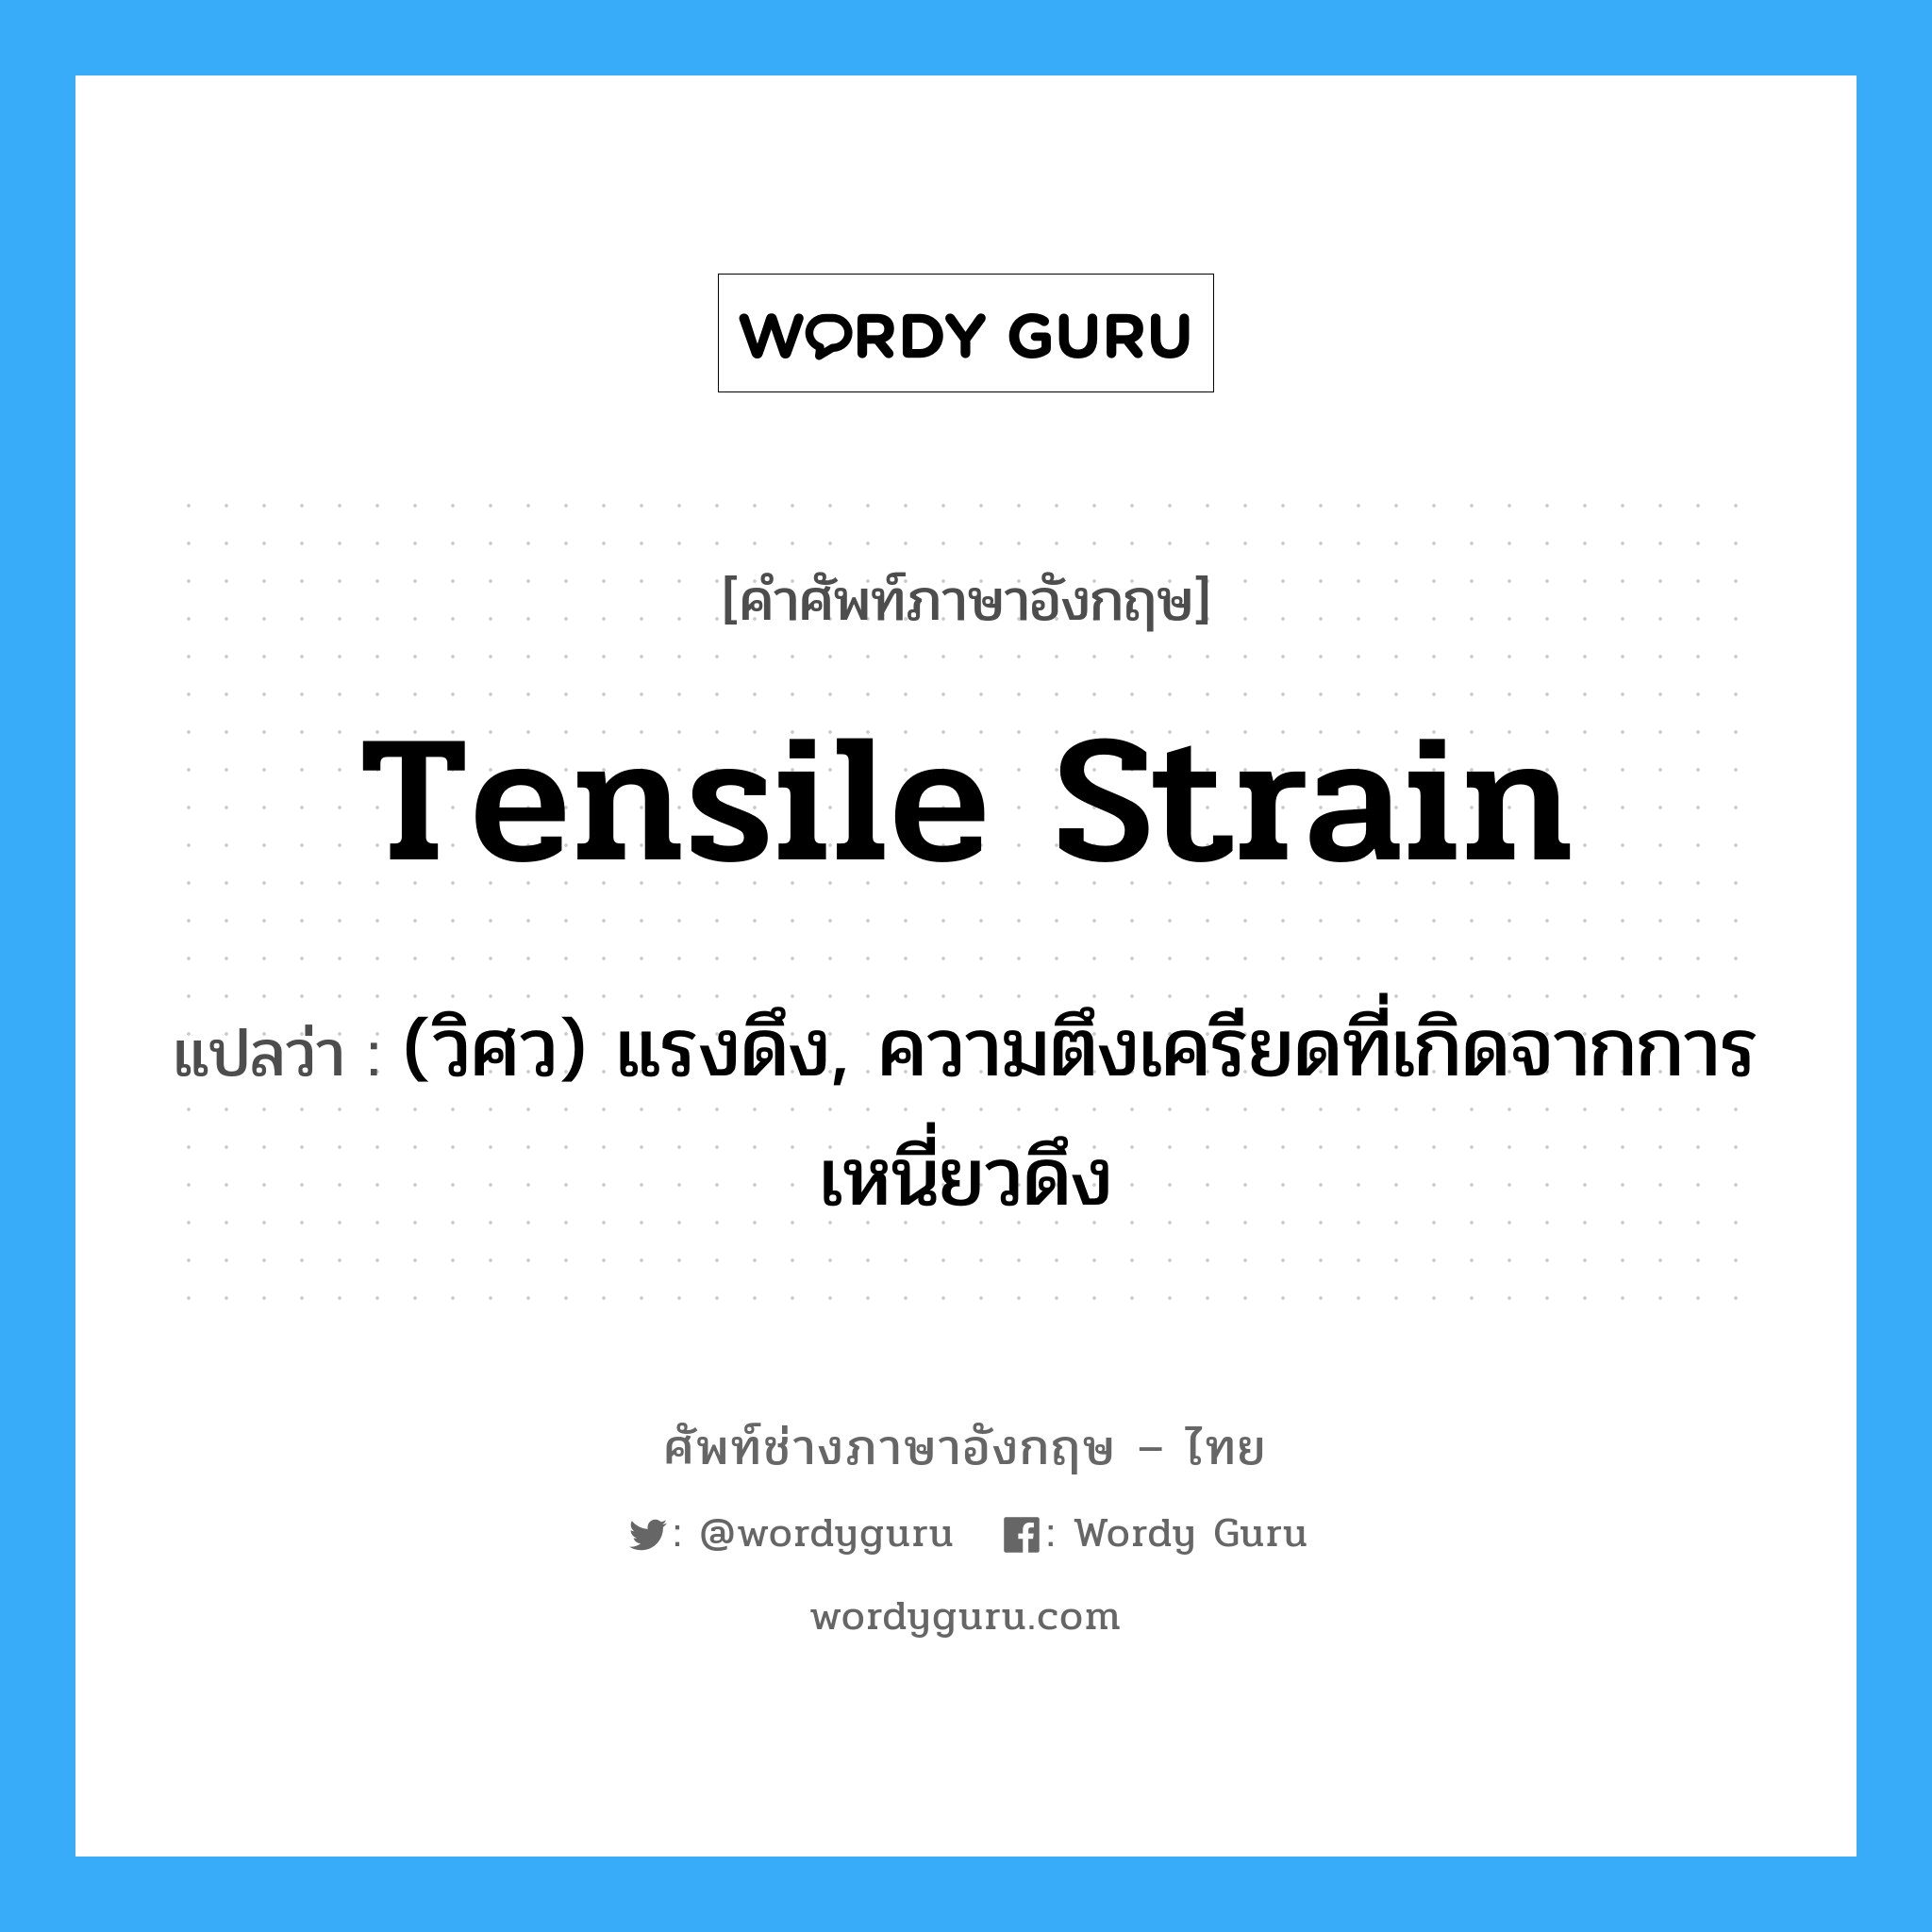 tensile strain แปลว่า?, คำศัพท์ช่างภาษาอังกฤษ - ไทย tensile strain คำศัพท์ภาษาอังกฤษ tensile strain แปลว่า (วิศว) แรงดึง, ความตึงเครียดที่เกิดจากการเหนี่ยวดึง